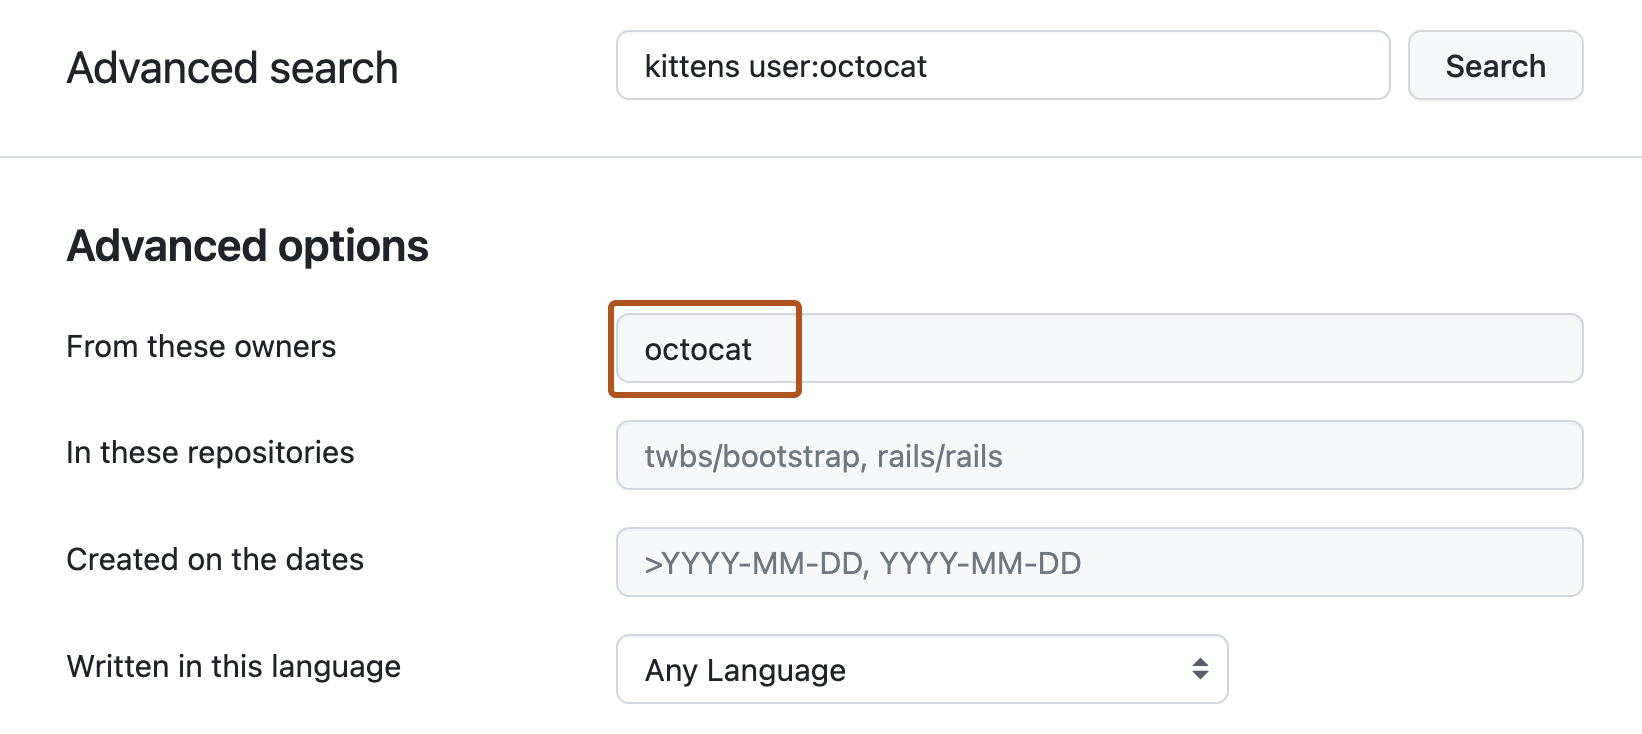 Captura de tela da página Pesquisa avançada. A barra de pesquisa superior é preenchida com a consulta "gatinhos usuário:octocat" e, na seção "Opções avançadas" abaixo, a caixa de texto "Destes proprietários" contém o termo "octocat" e está realçada em laranja escuro.